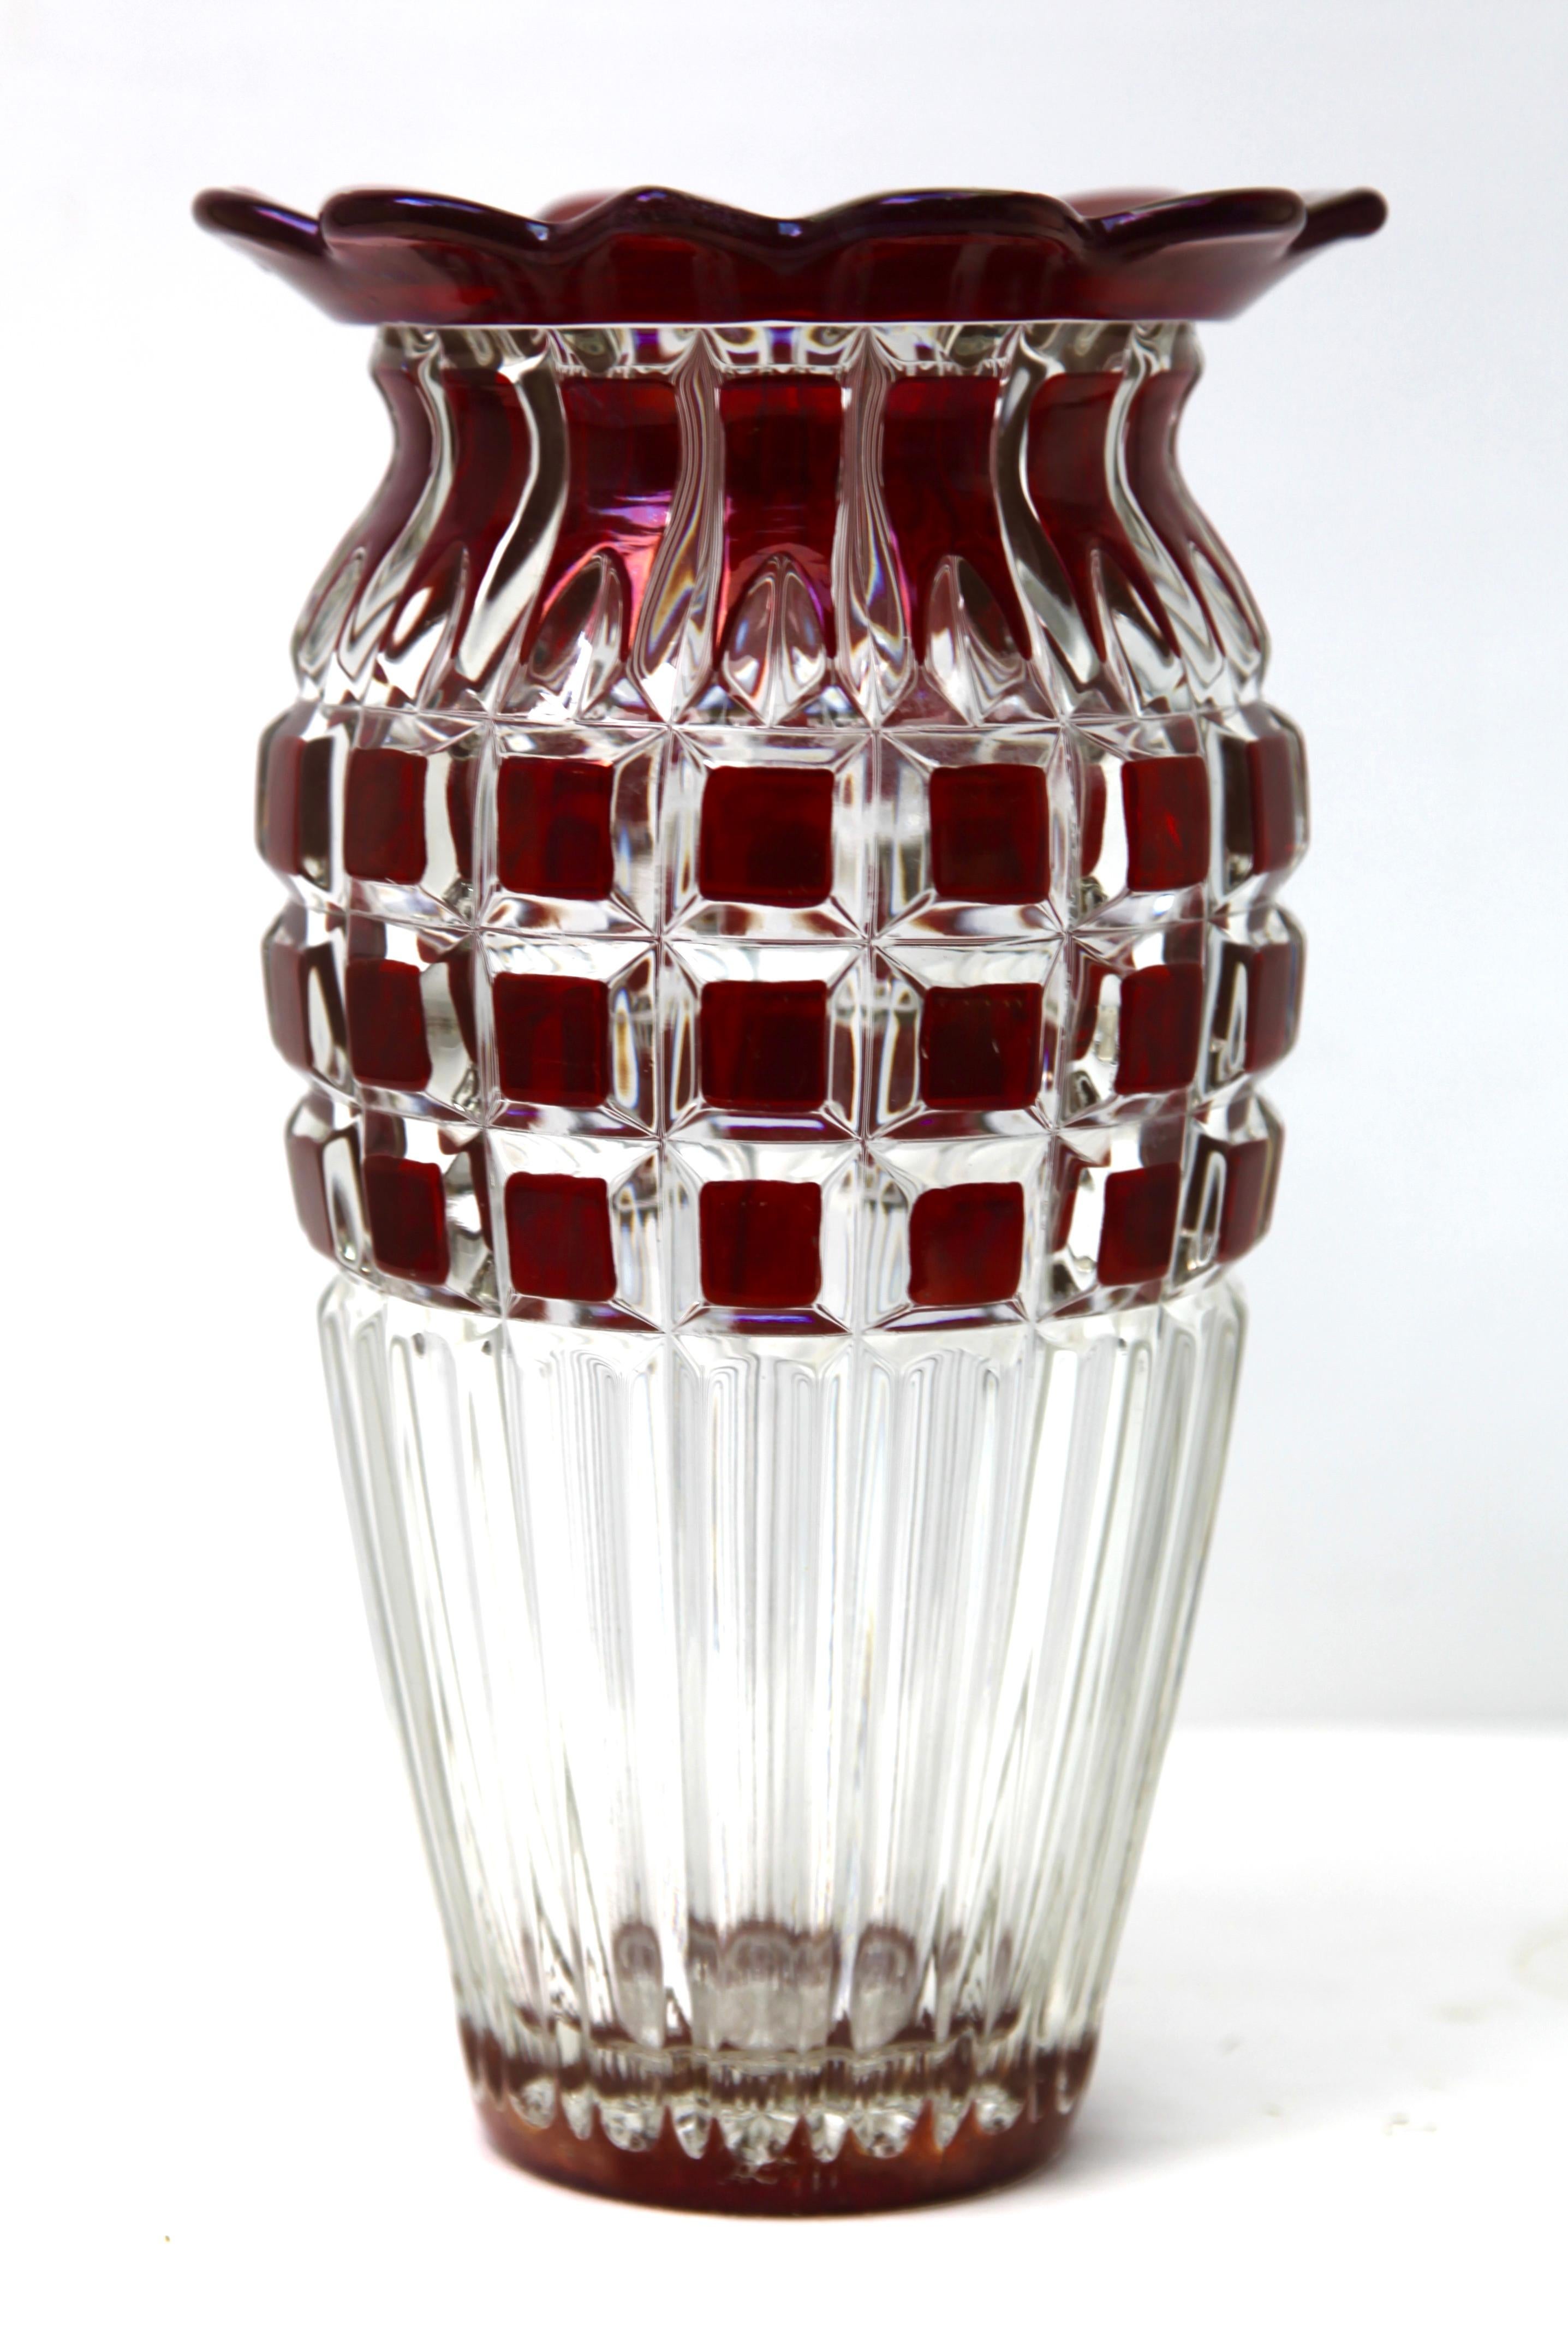 Vase en verre de cristal de couleur canneberge, de style bohème, avec un décor géométrique taillé dans la masse. 
Le corps contient une bonne quantité d'eau pour maintenir la stabilité et l'épanouissement de l'arrangement.

Très coloré, il